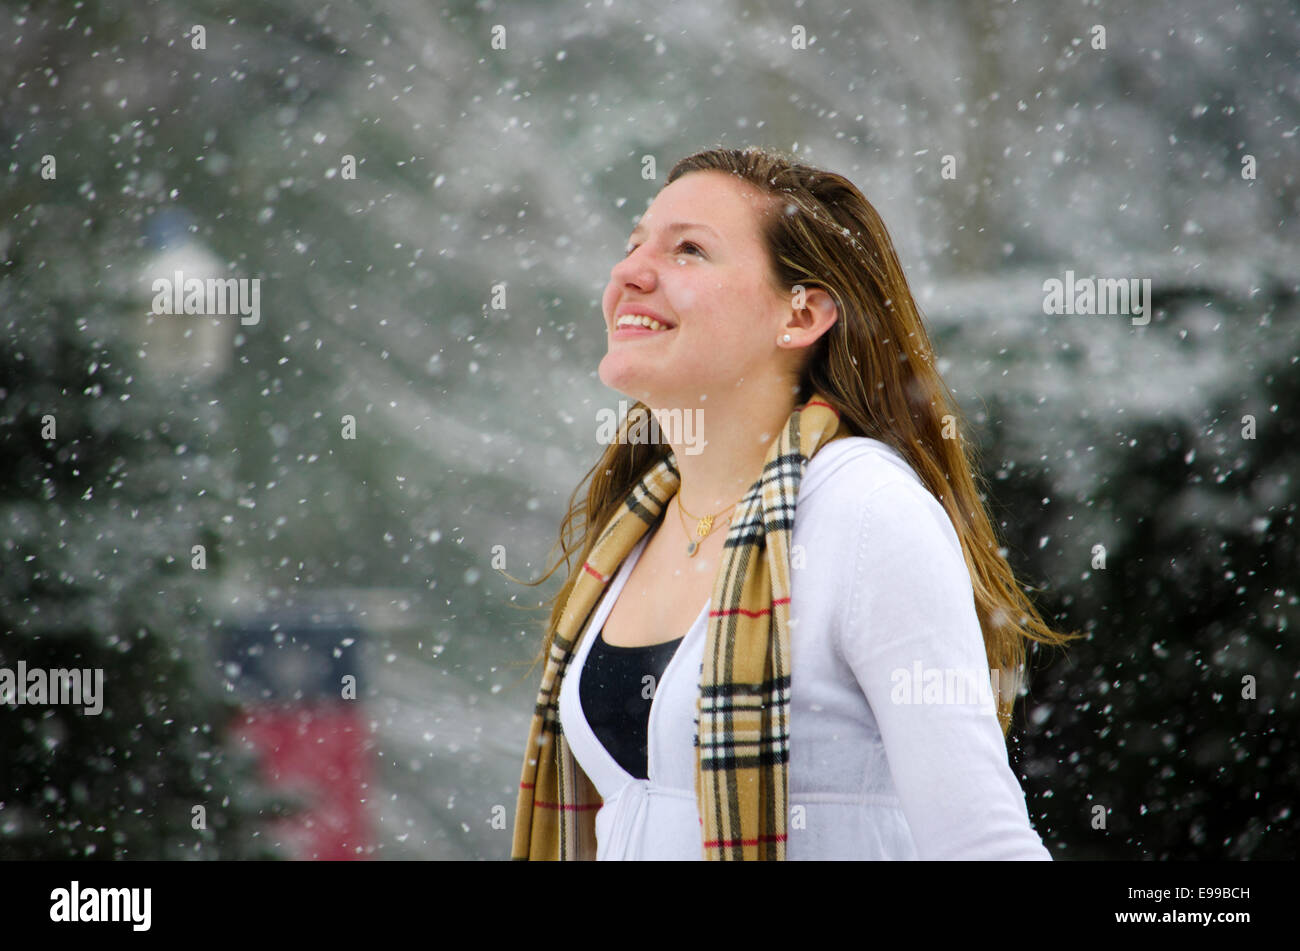 Leise rieselt der Schnee: eine junge Frau ihren Kopf erhebt gegen eine schöne Schnee-Dusche. Stockfoto